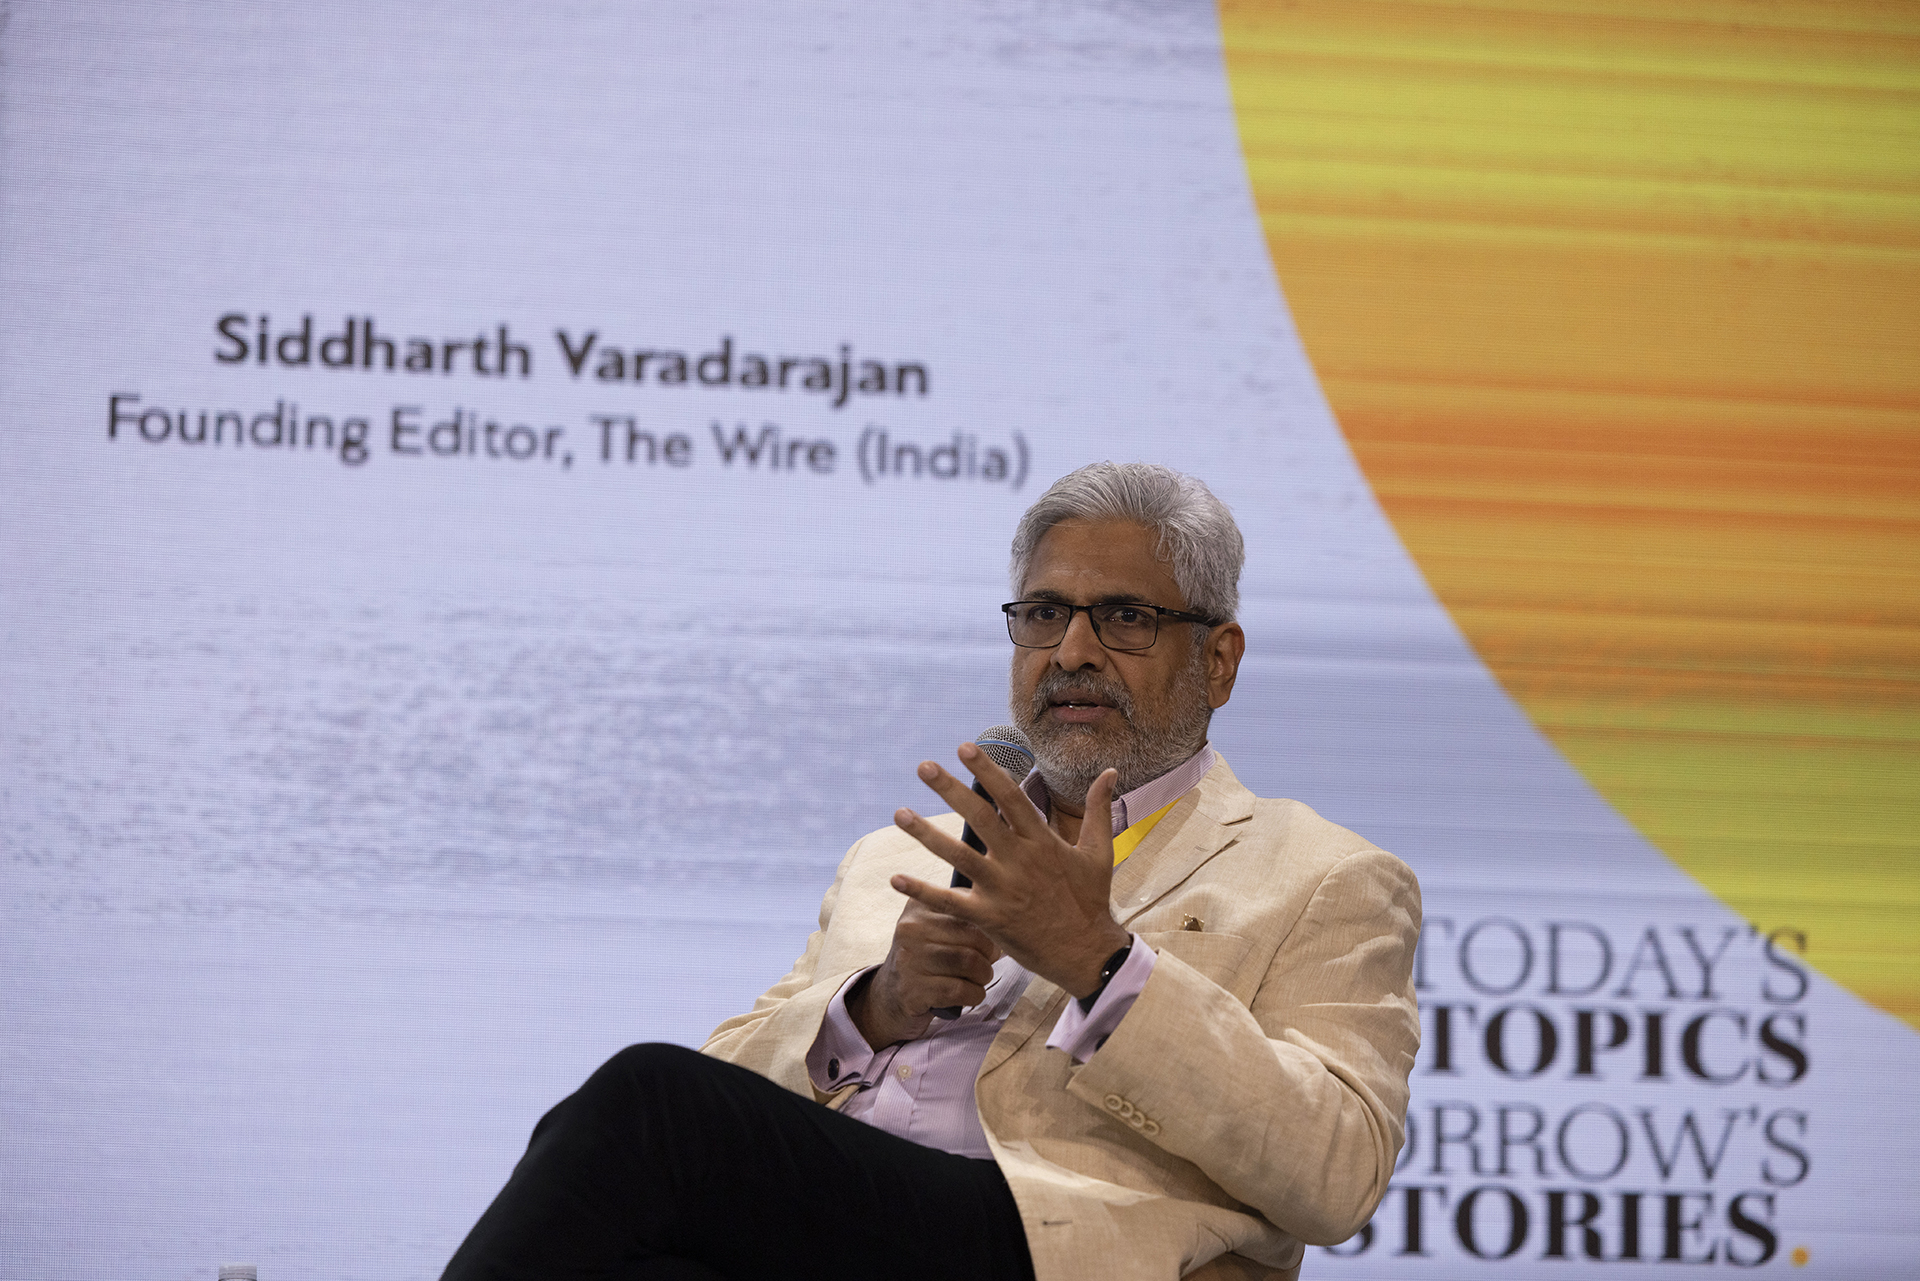 Ο Siddharth Varadarajan, ιδρυτικός συντάκτης του The Wire, στο πάνελ "Μοντέλα βιωσιμότητας στην εποχή της ψηφιακής επανάστασης" κατά τη διάρκεια του iMEdD International Journalism Forum 2023. Κάθεται σε μια καρέκλα στη σκηνή κρατώντας ένα φορητό μικρόφωνο και σηκώνει το χέρι του ως ένδειξη αποφασιστικότητας και έντασης. Στην οθόνη πίσω του φαίνεται το όνομα και ο τίτλος του.